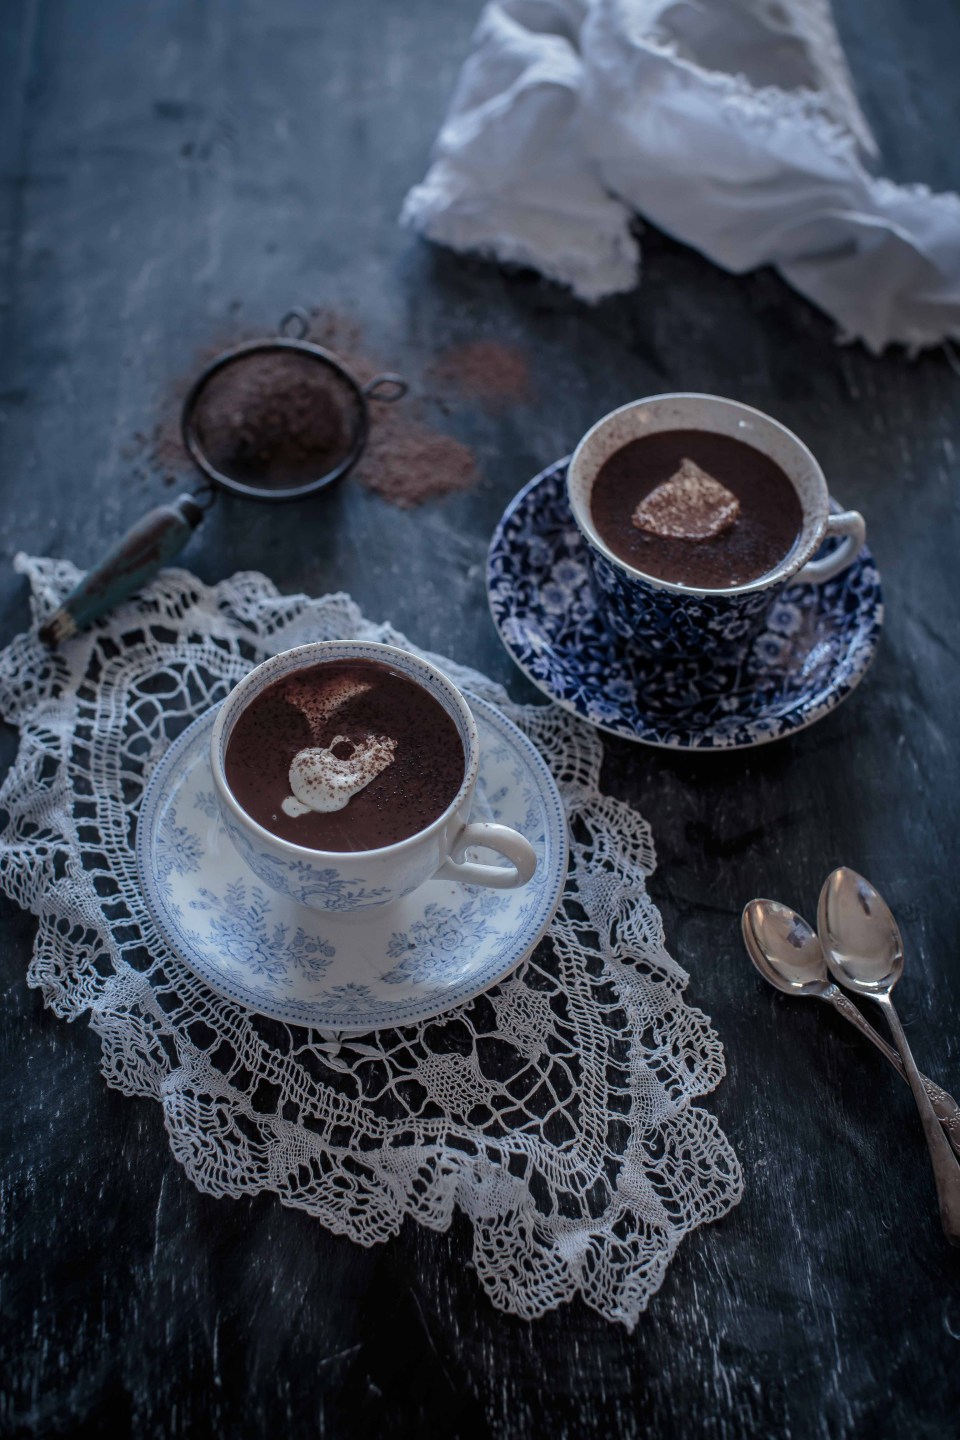 DIY chilli hot chocolate recipe (via themacadames.com)